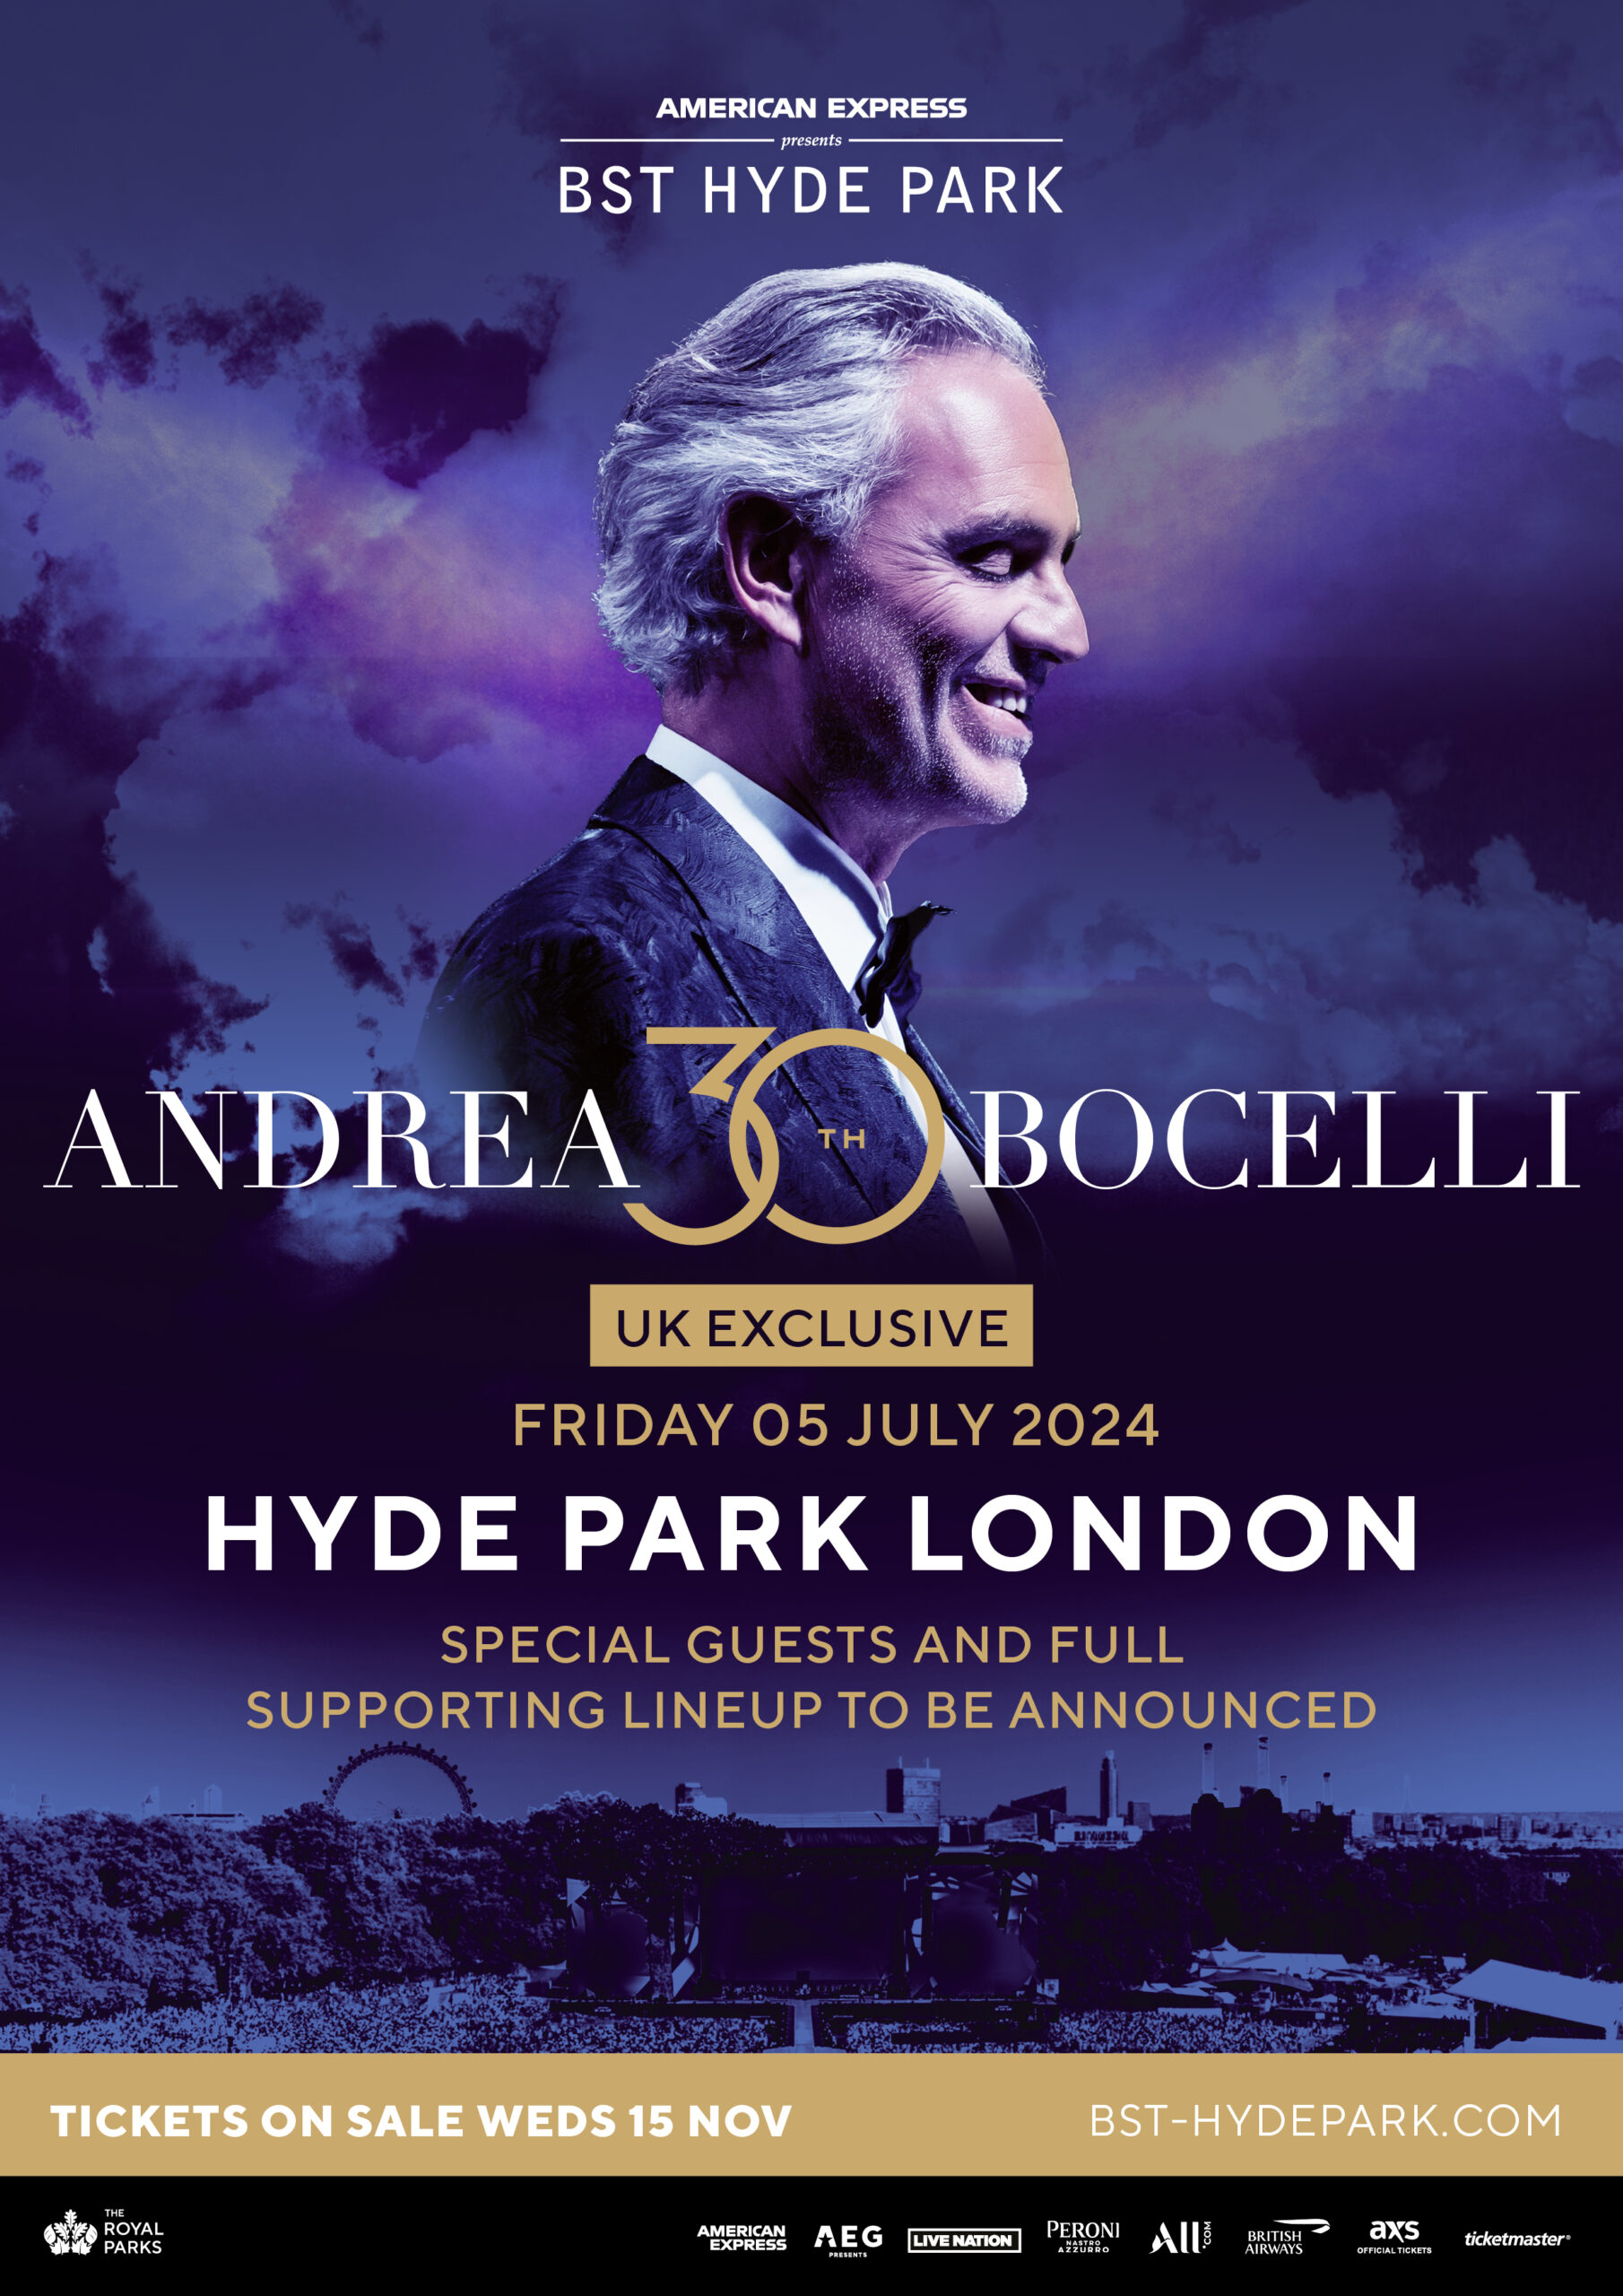 Andrea Bocelli: Crossover Tenor Sensation Leads Pop-Opera